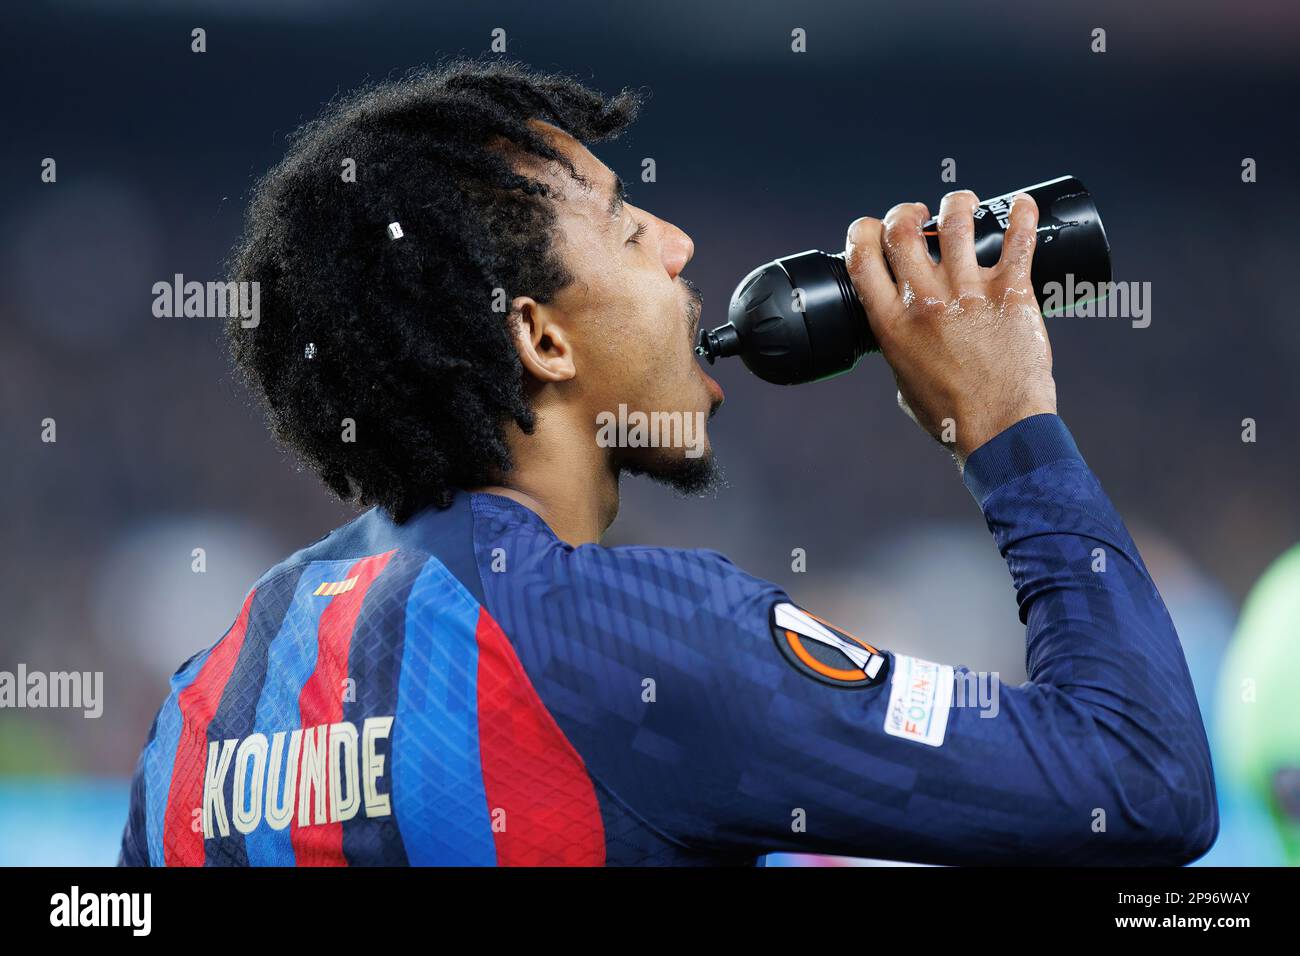 BARCELLONA - FEBBRAIO 16: Kounde beve acqua durante la partita della Champions League tra il FC Barcelona e il Manchester United allo Stadio Spotify Camp Nou Foto Stock